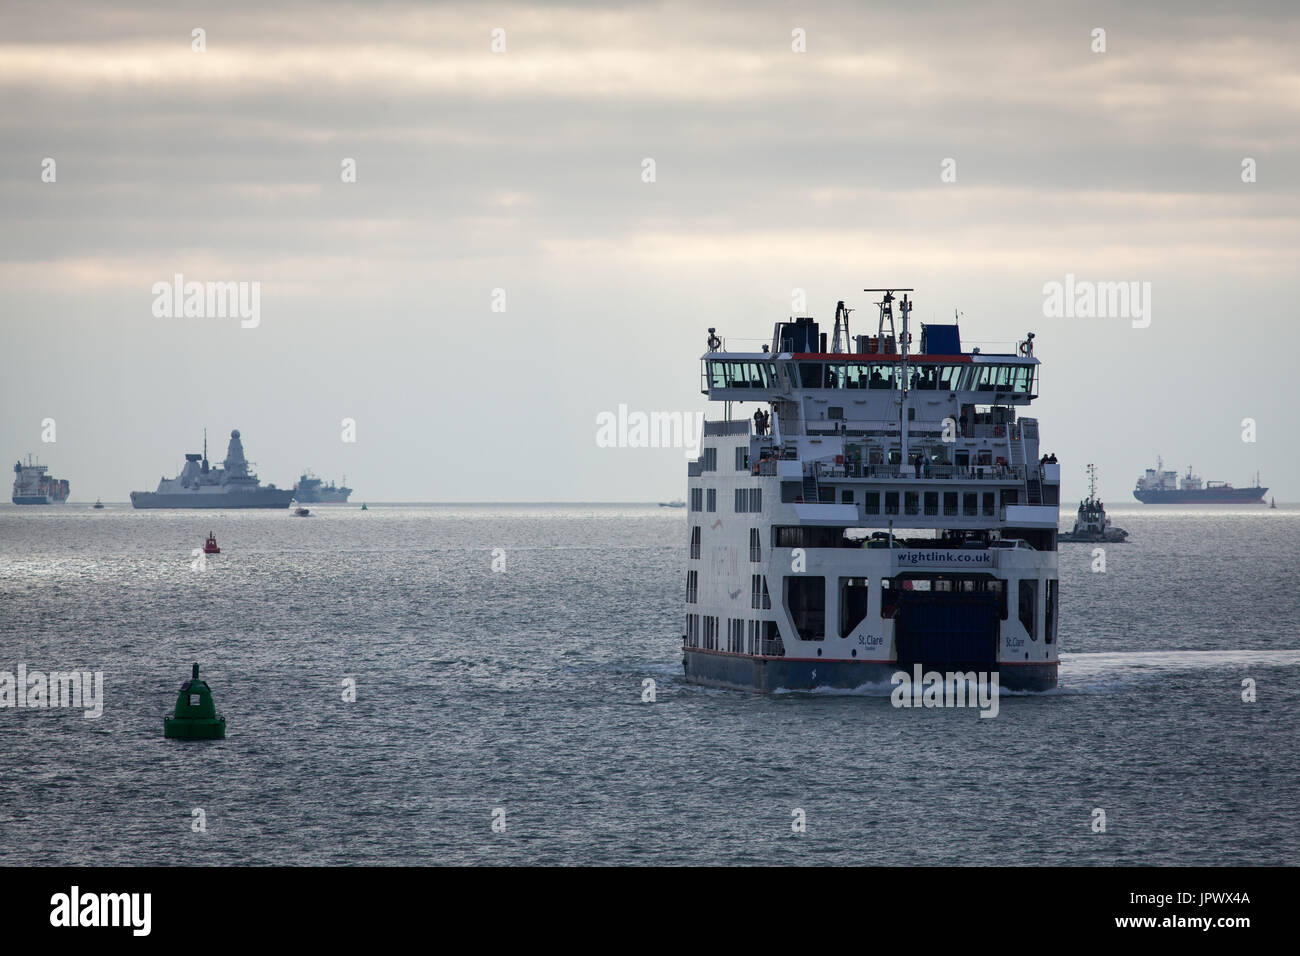 Le car-ferry Wightlink, sainte Claire, approchant le port de Portsmouth que le HMS Diamond, le destroyer de la Marine royale, voiles derrière dans la distance Banque D'Images